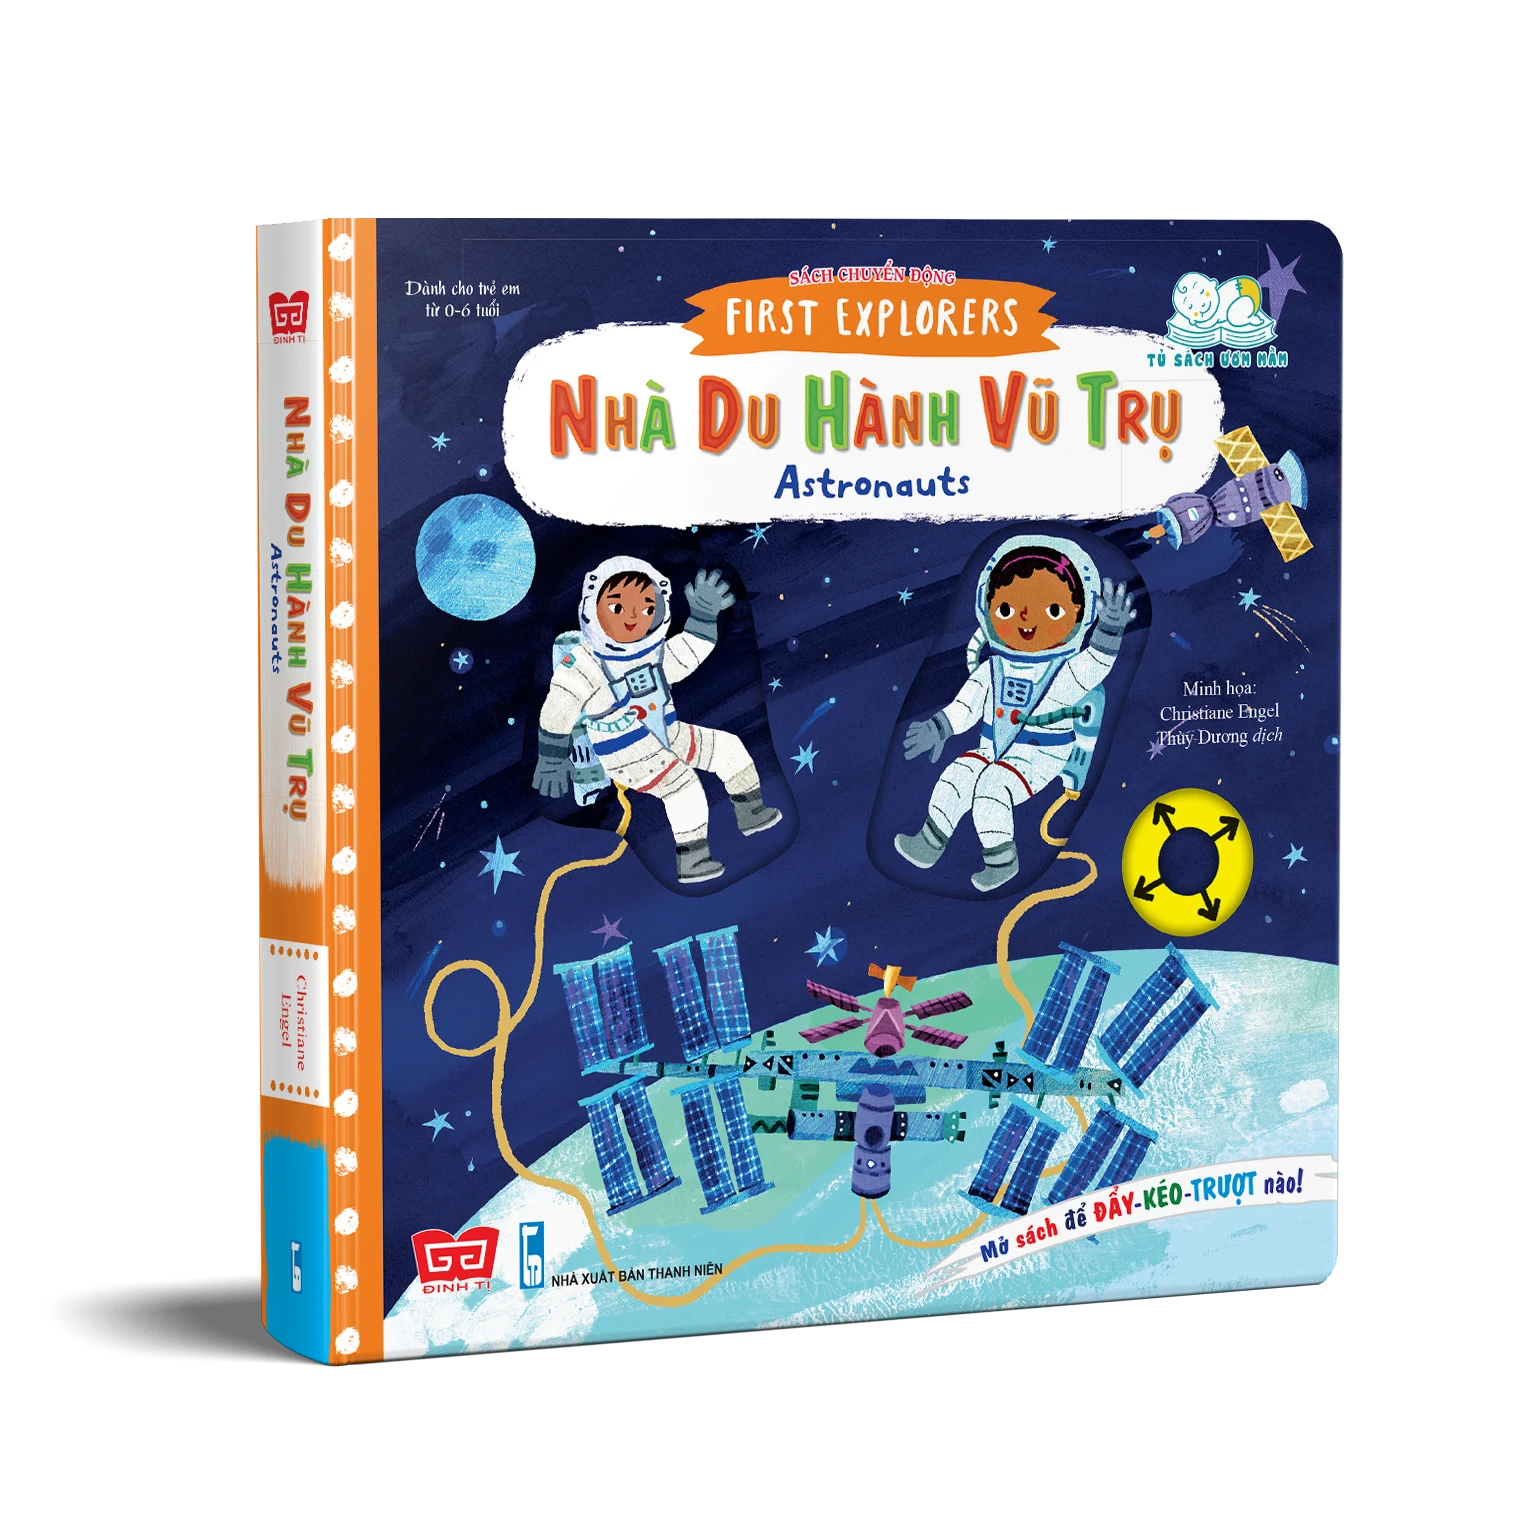 Sách tương tác - Sách chuyển động - First explorers - Astronauts - Nhà du hành vũ trụ